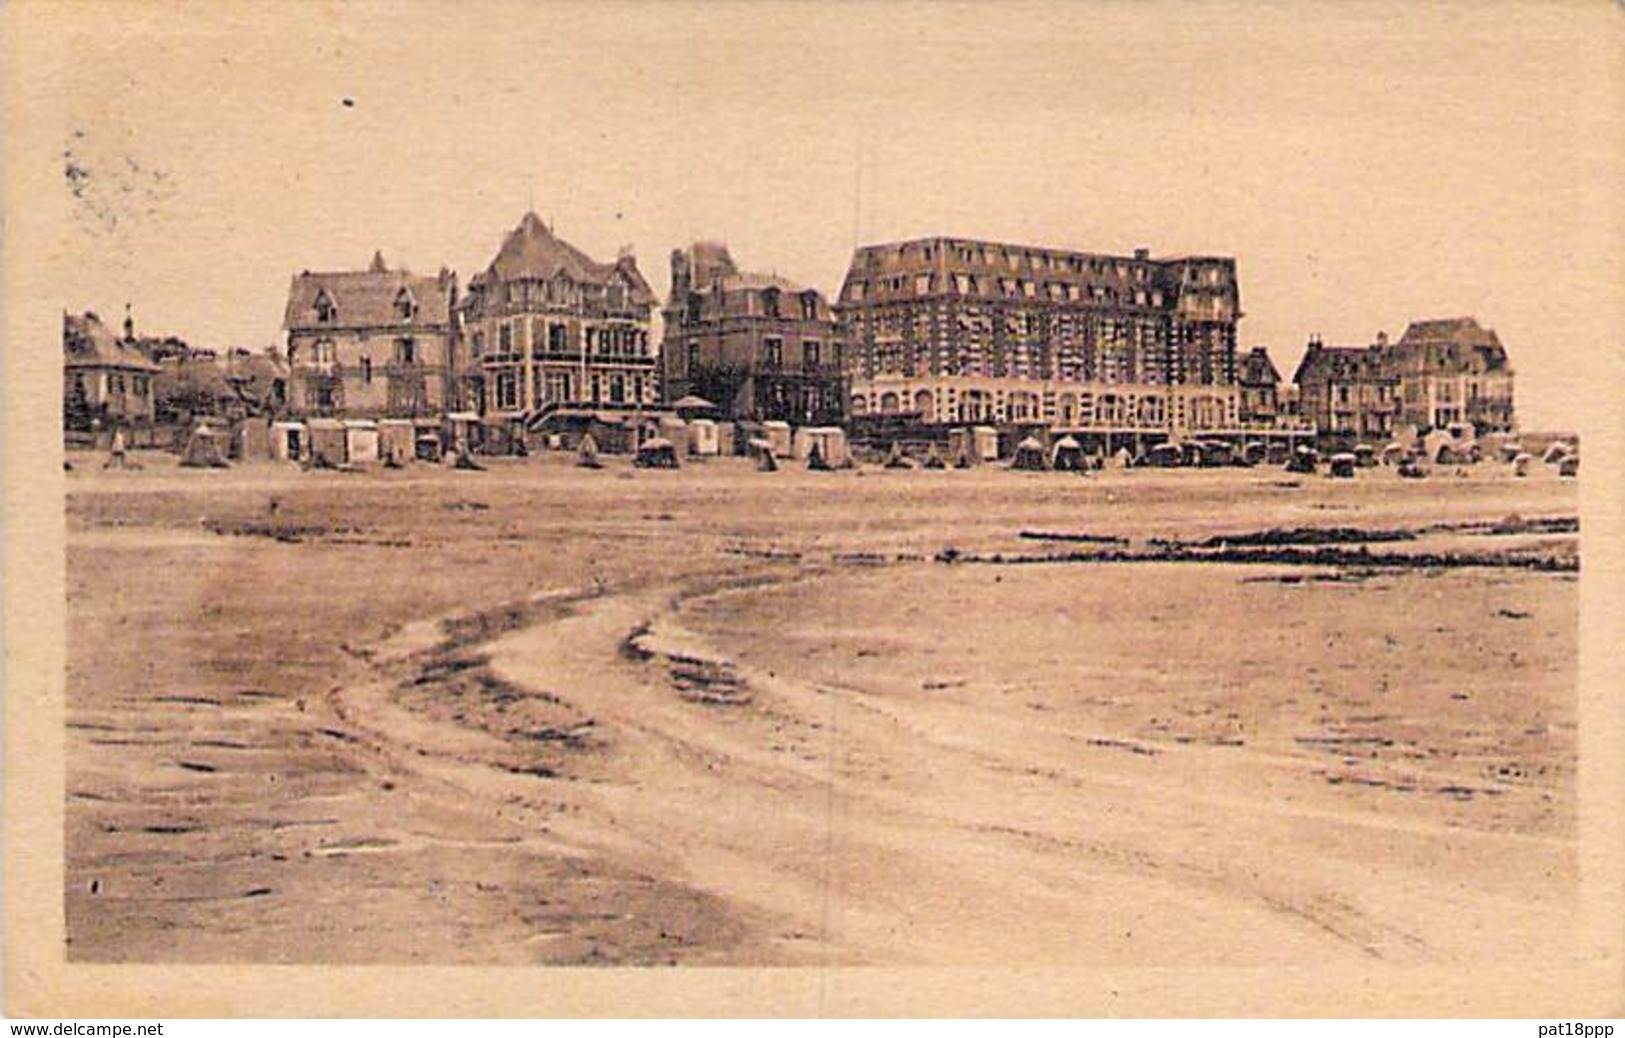 14 - BLONVILLE SUR MER La Plage Le Grand Hotel Et Les Villas - CPSM Sépia Village ( 1.500 Habitants ) PF 1949 - Calvados - Other & Unclassified